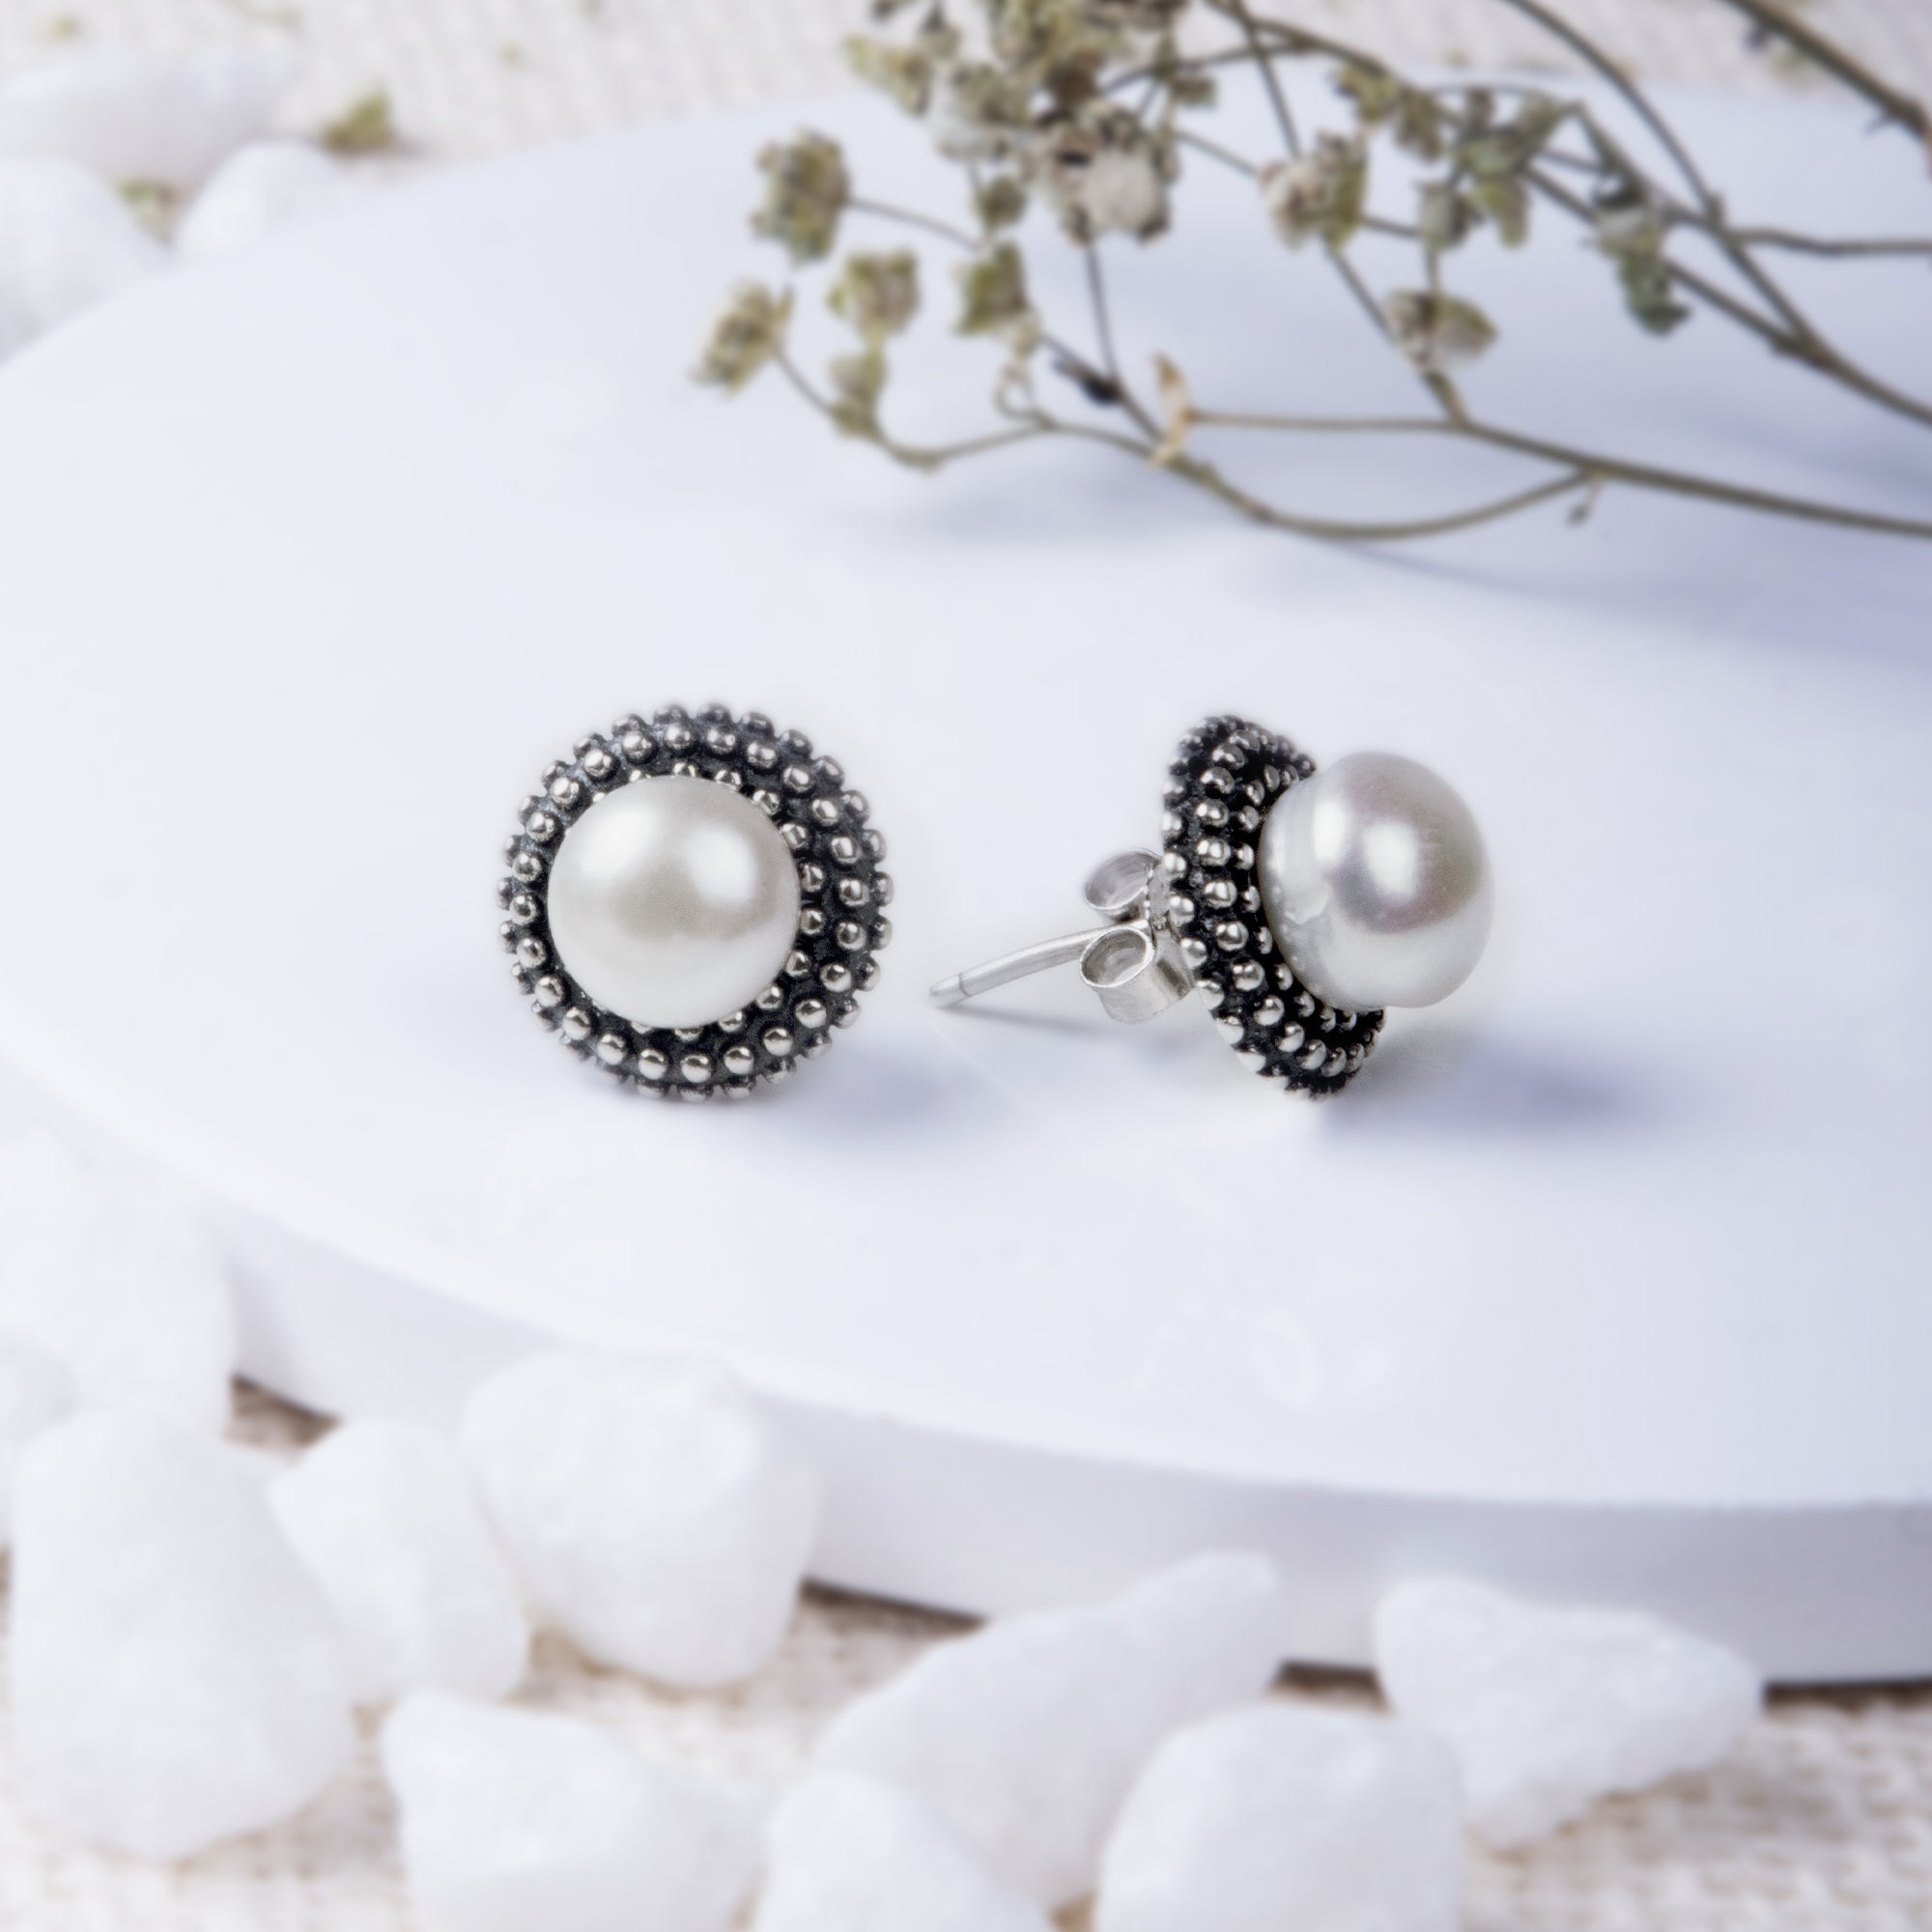 Buy White Earrings for Women by Estele Online | Ajio.com